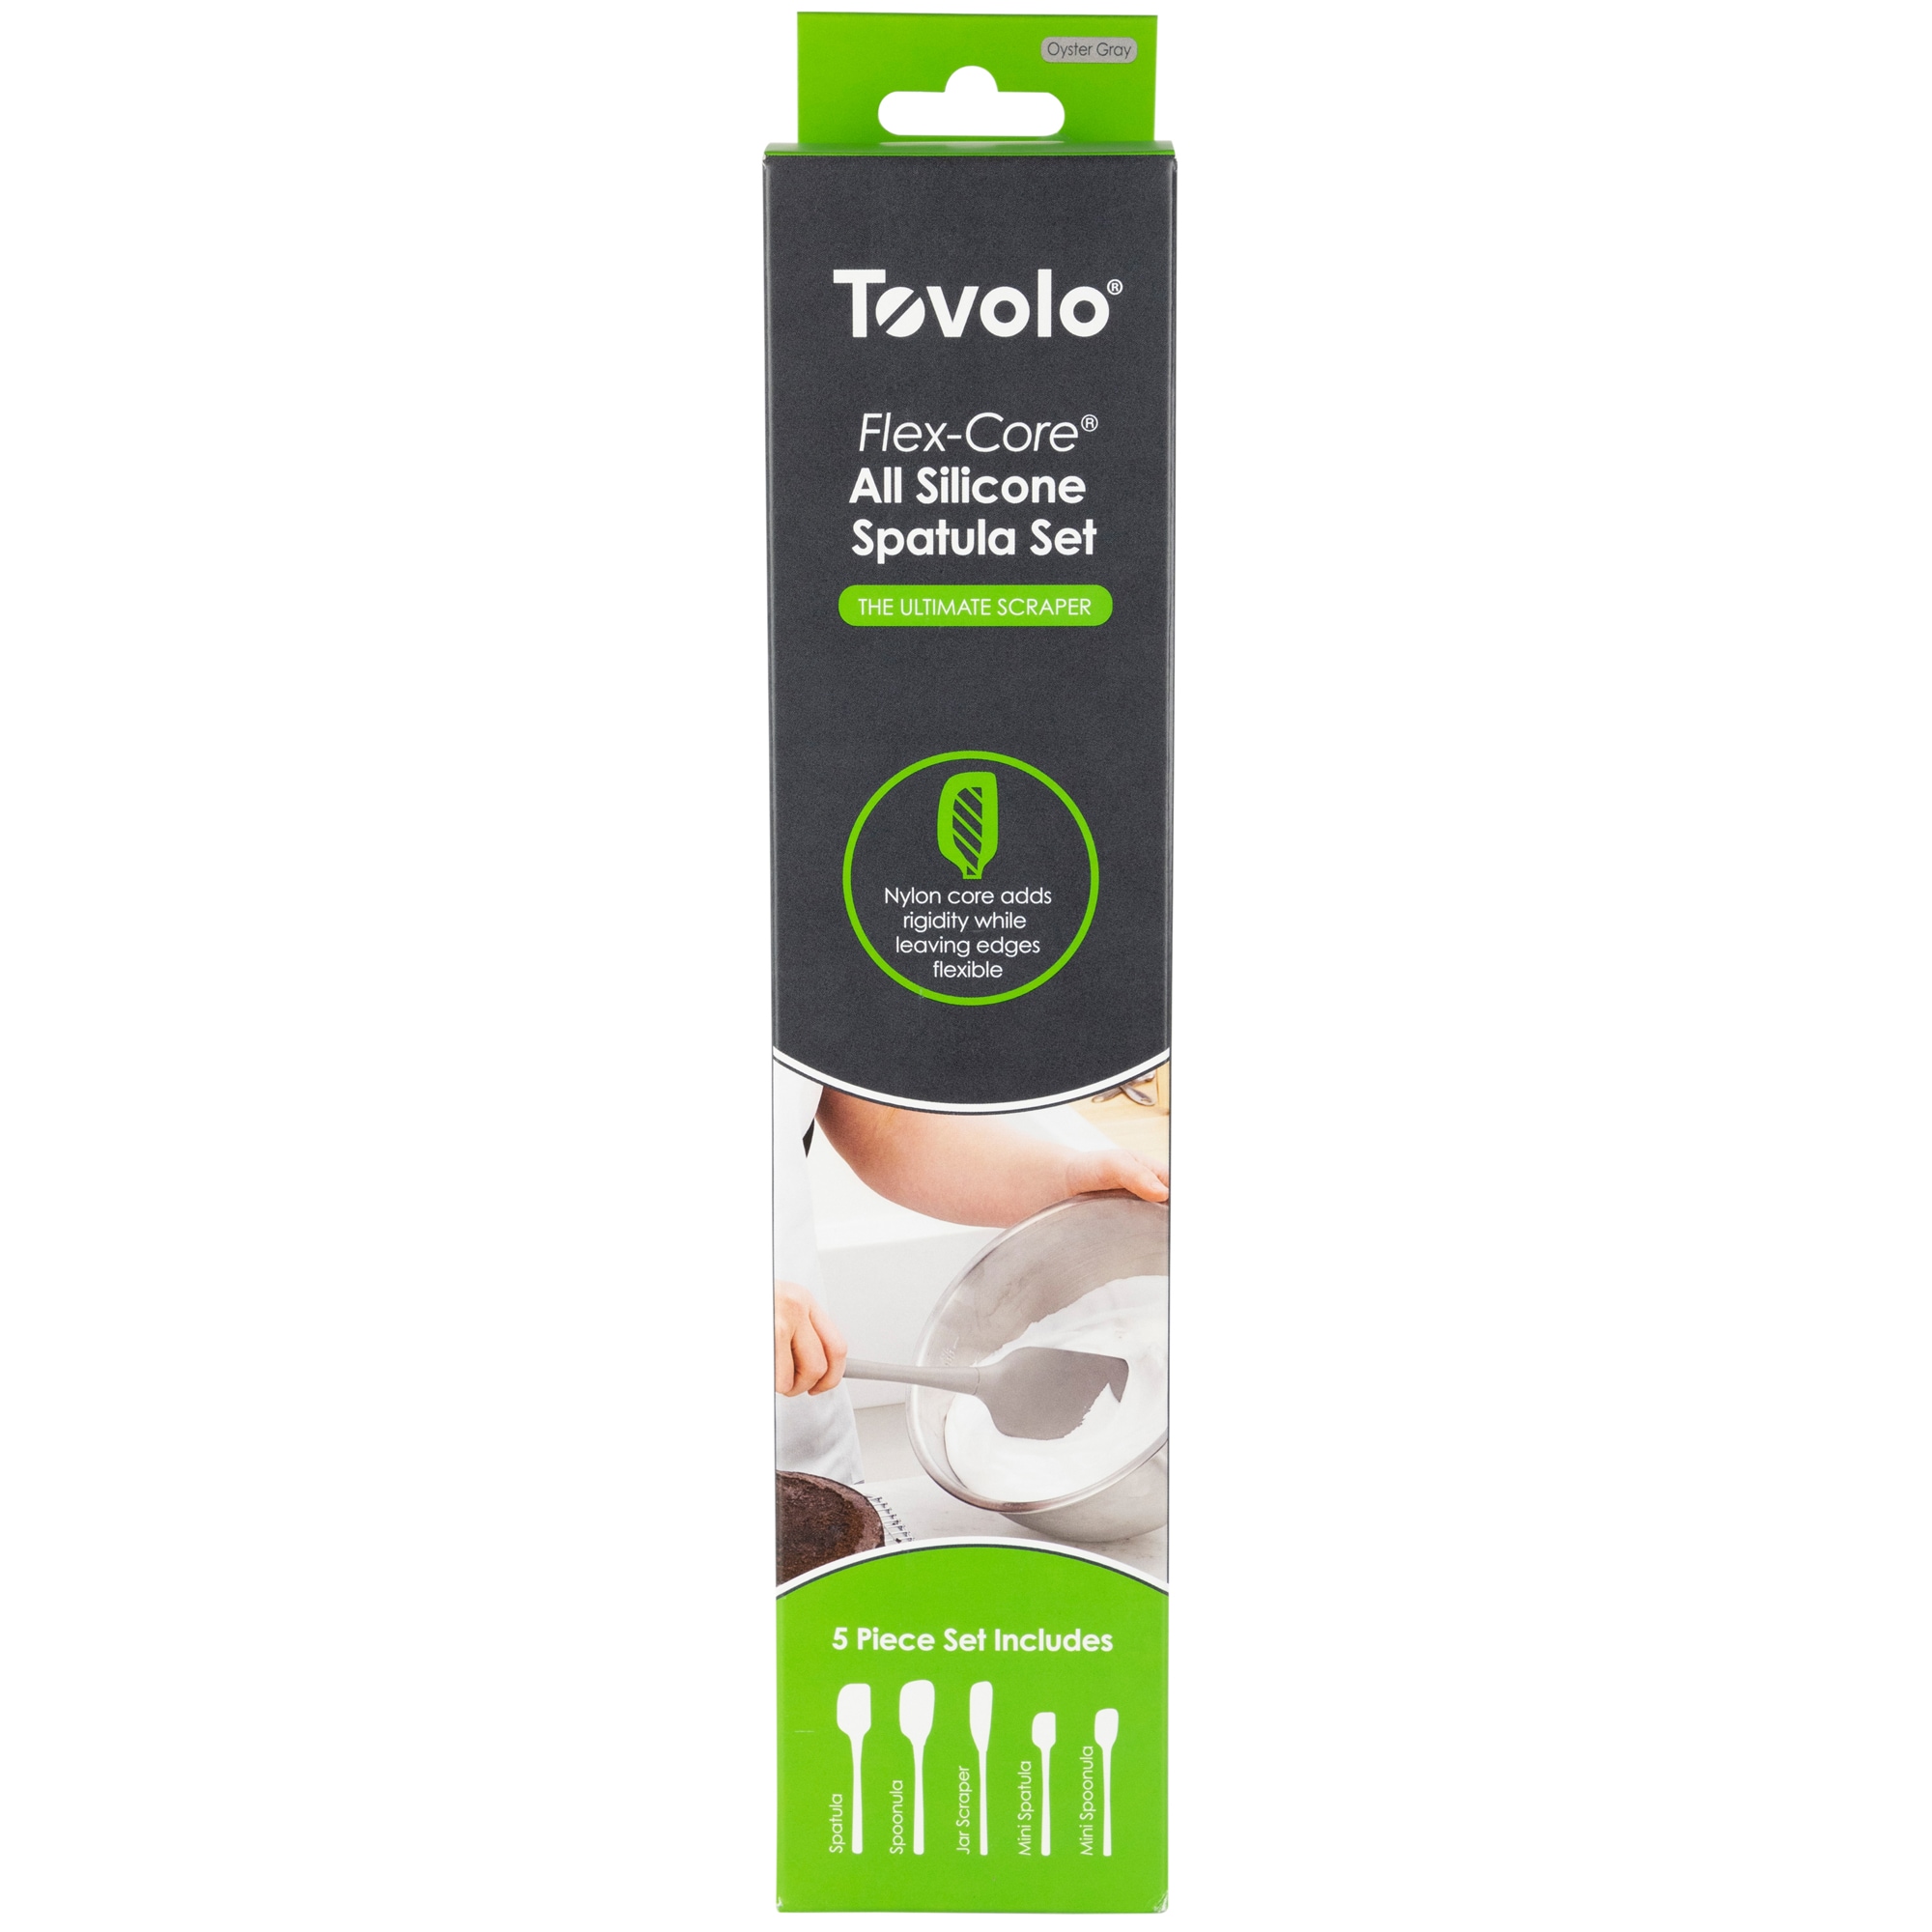 Tovolo Flex-Core All Silicone Spatula Set of 5 - Oyster Gray